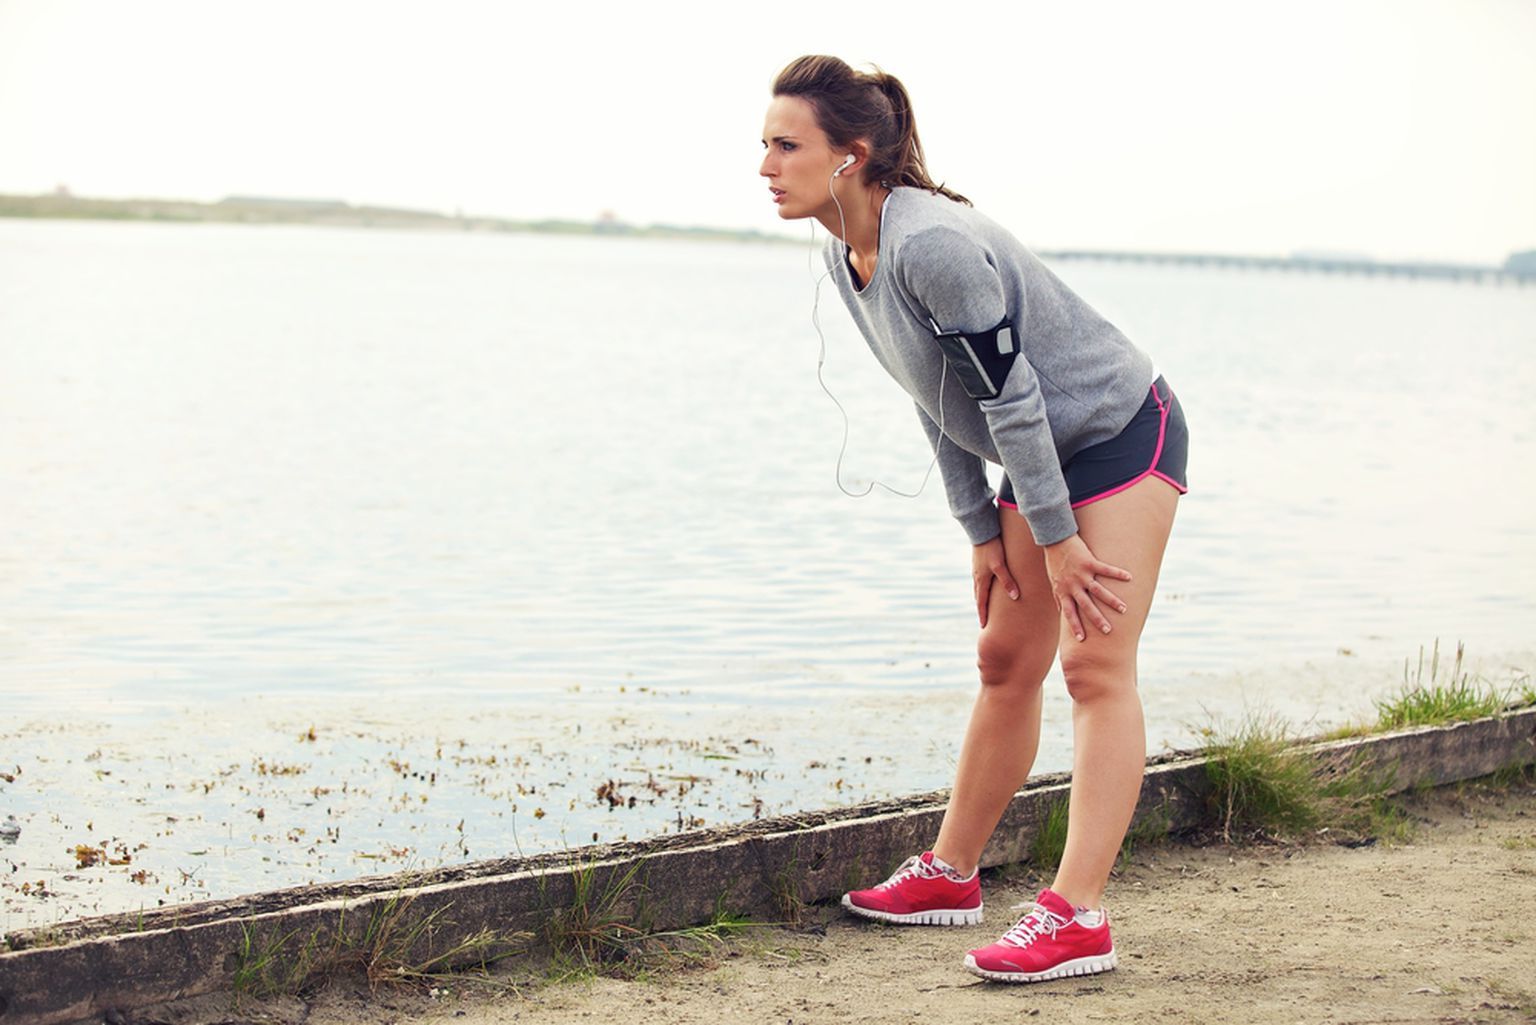 Тренироваться на голодный желудок опасно для здоровья.Фото: Shutterstock